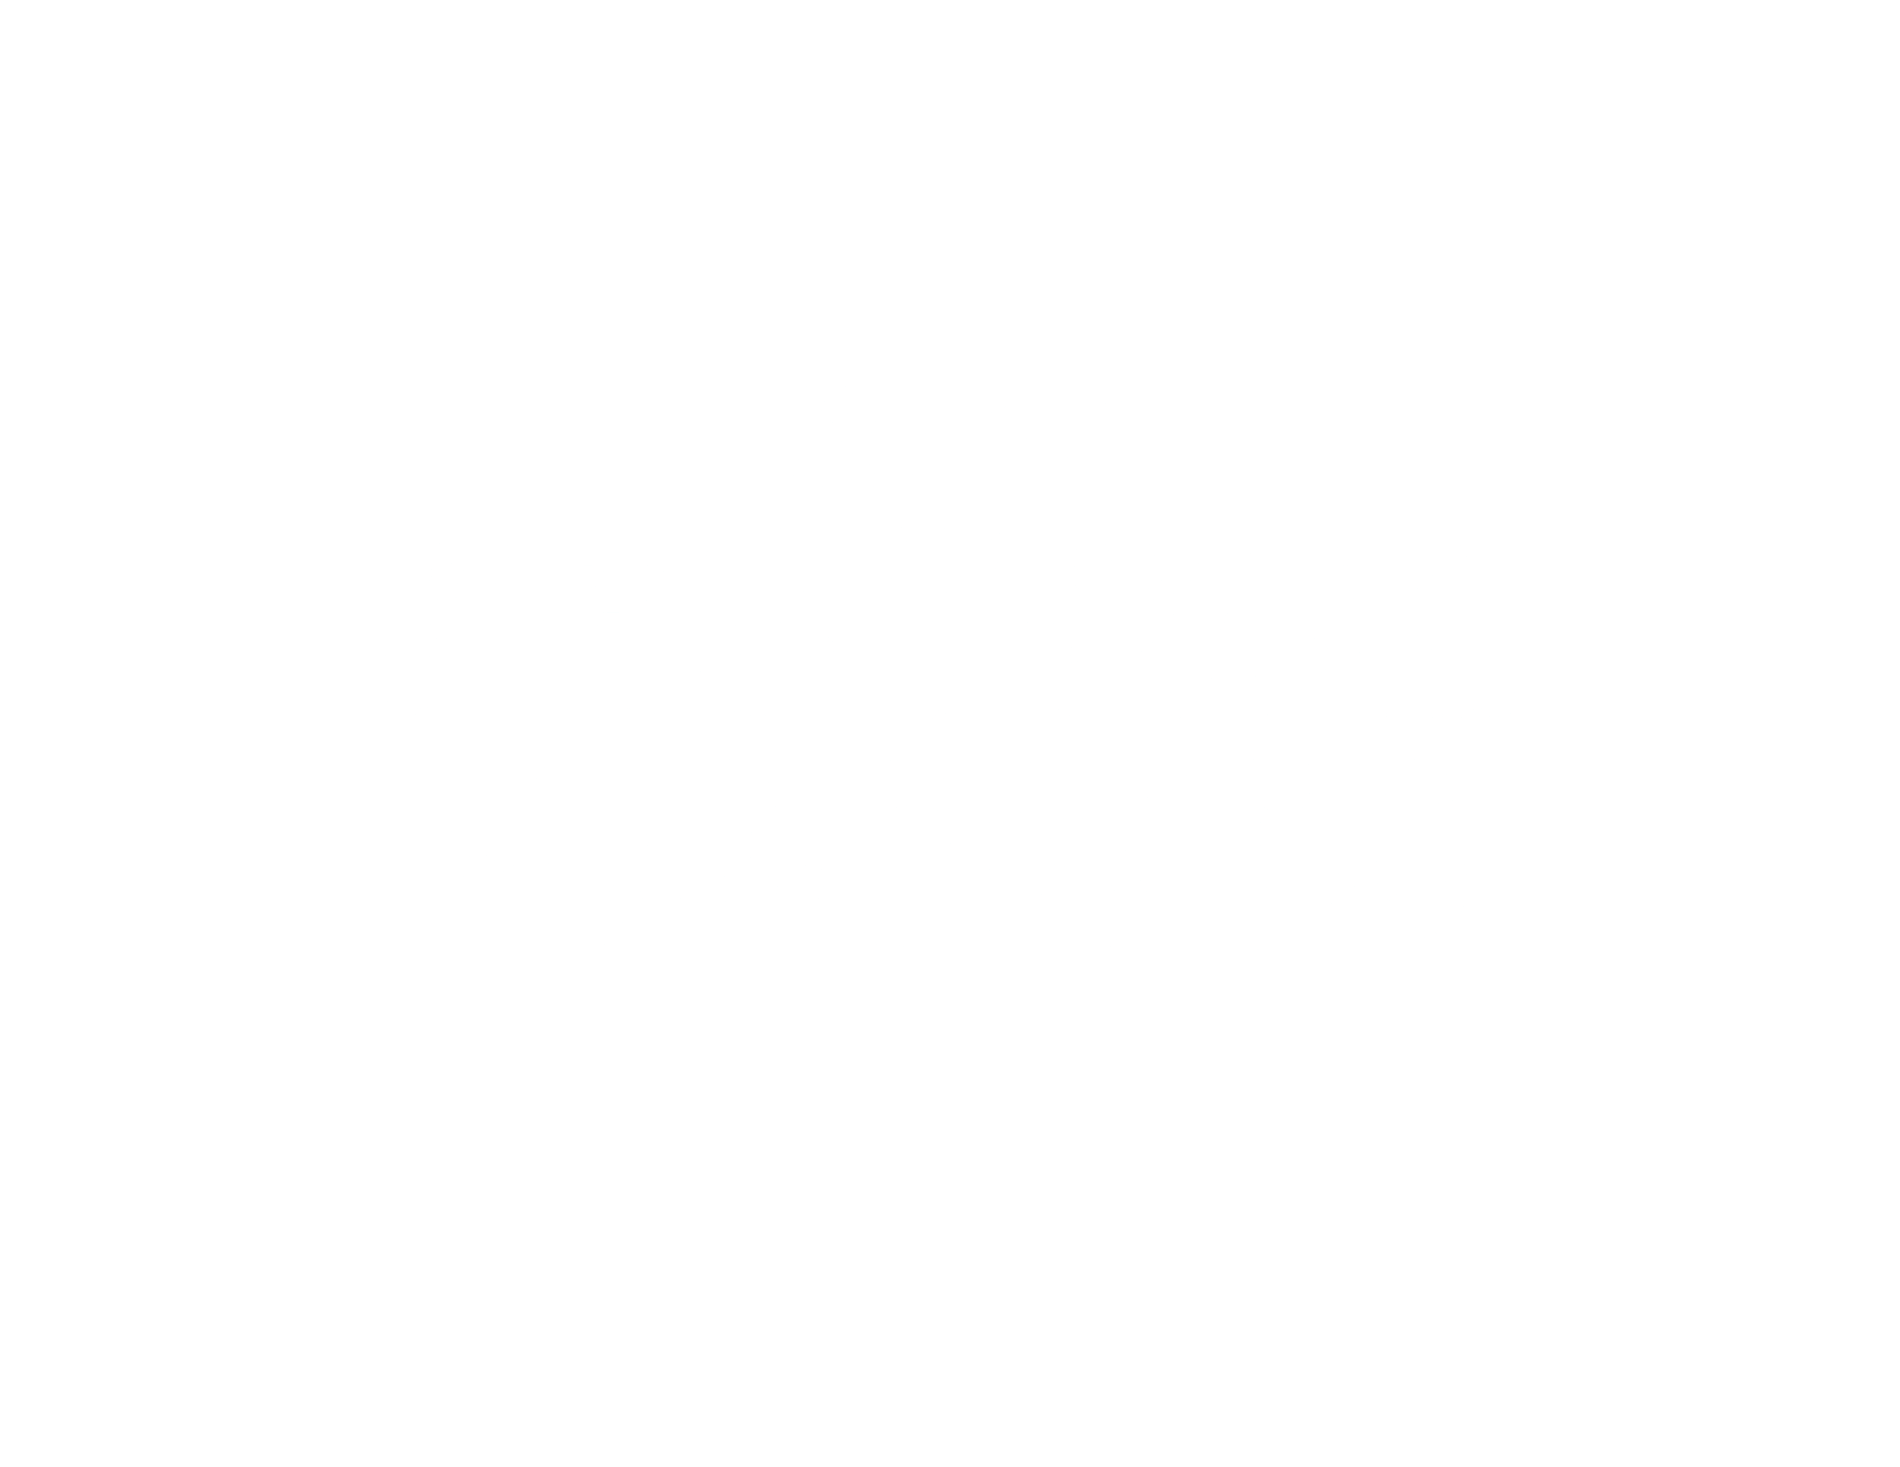 Festival of Lights 2023